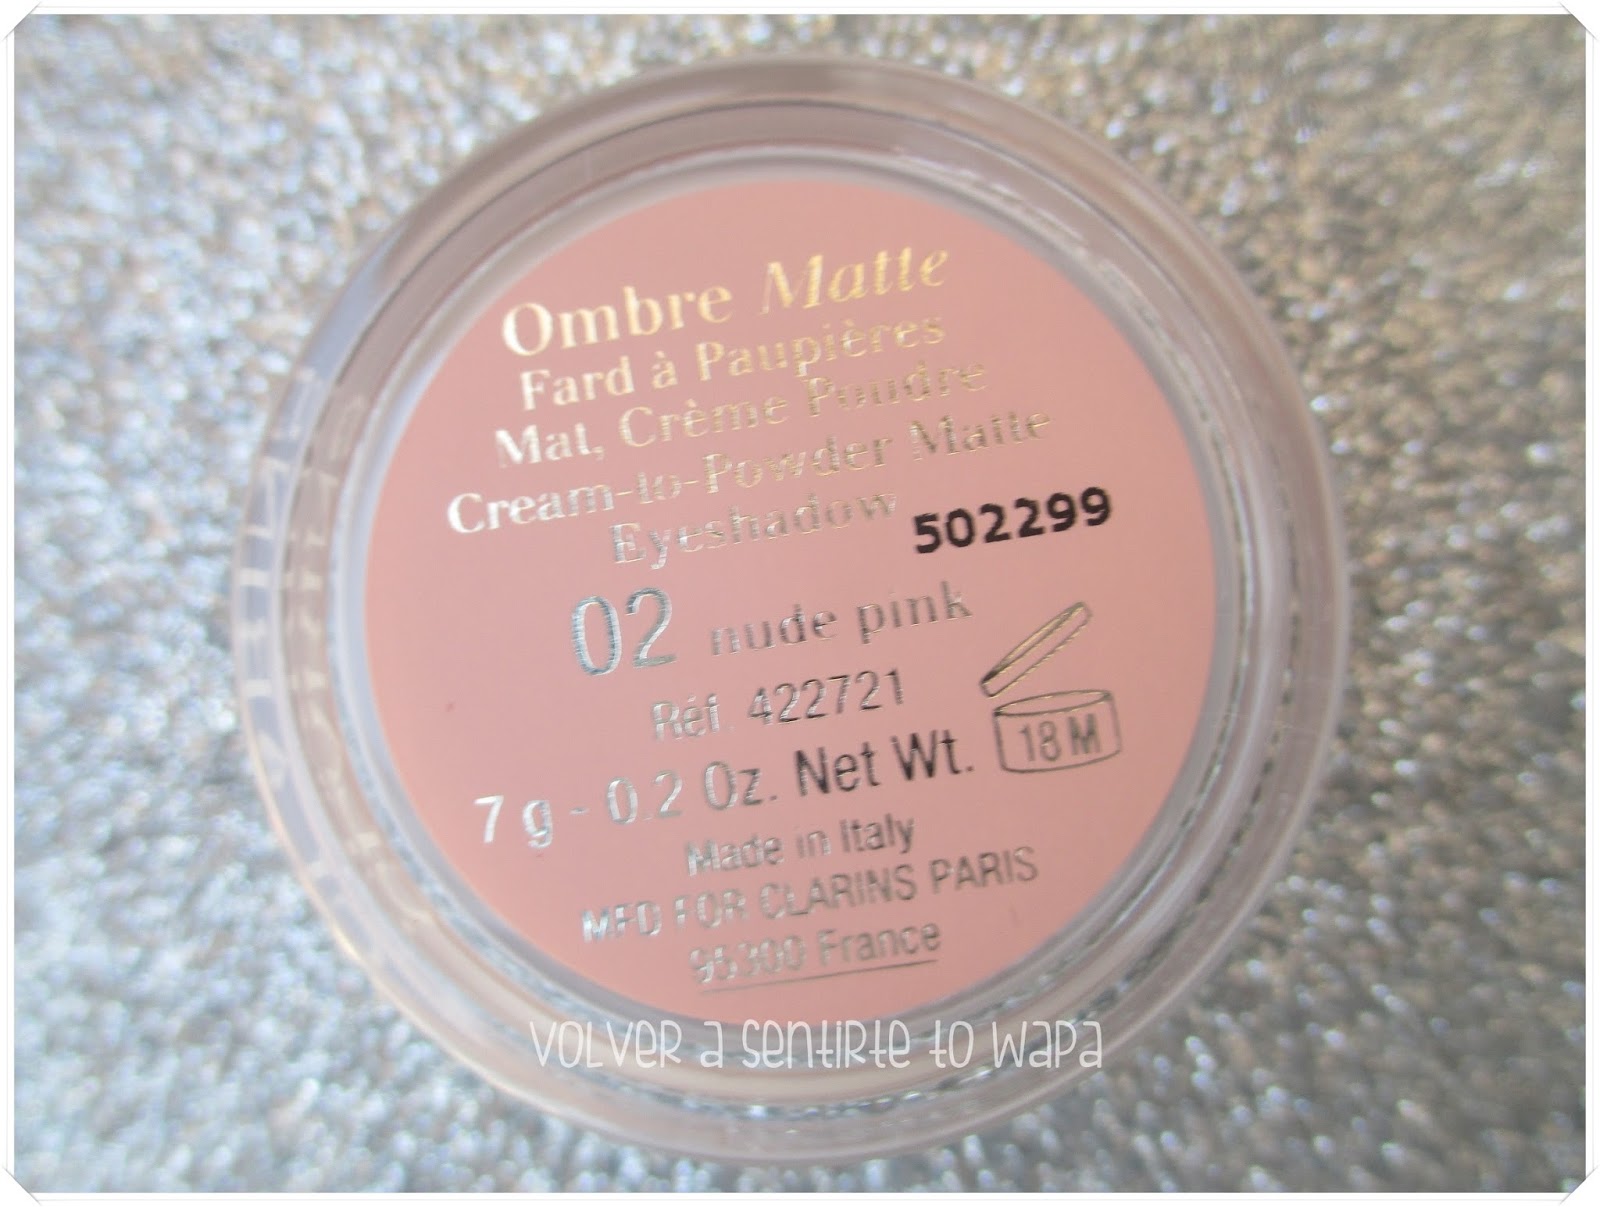 Ombre Matte de Clarins - 02 nude pink